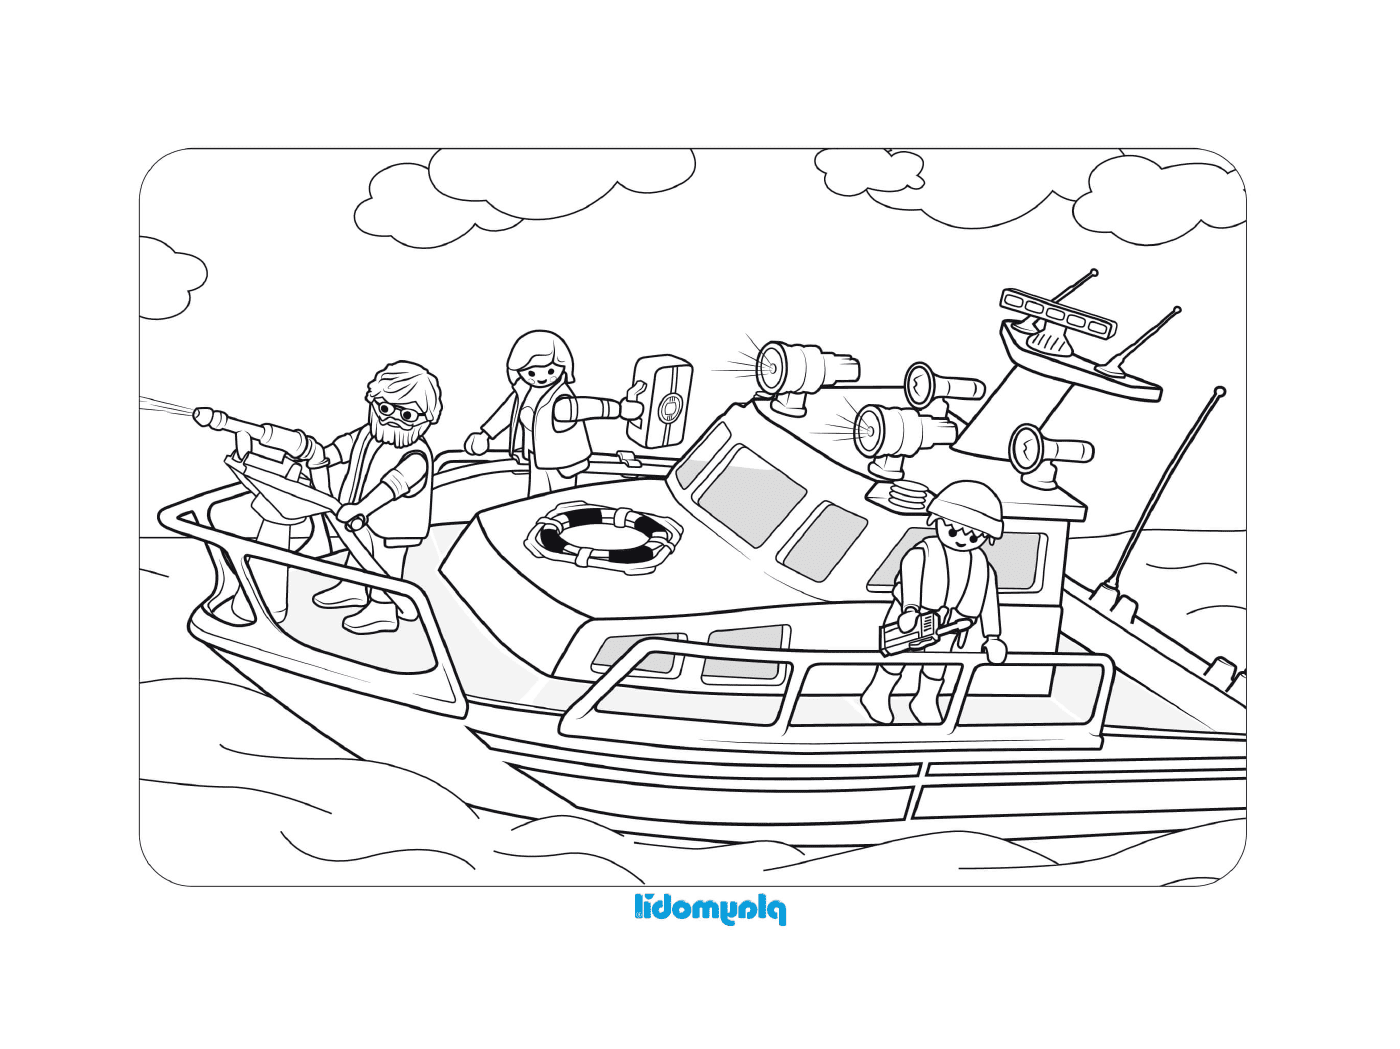  Лодка с людьми на борту 